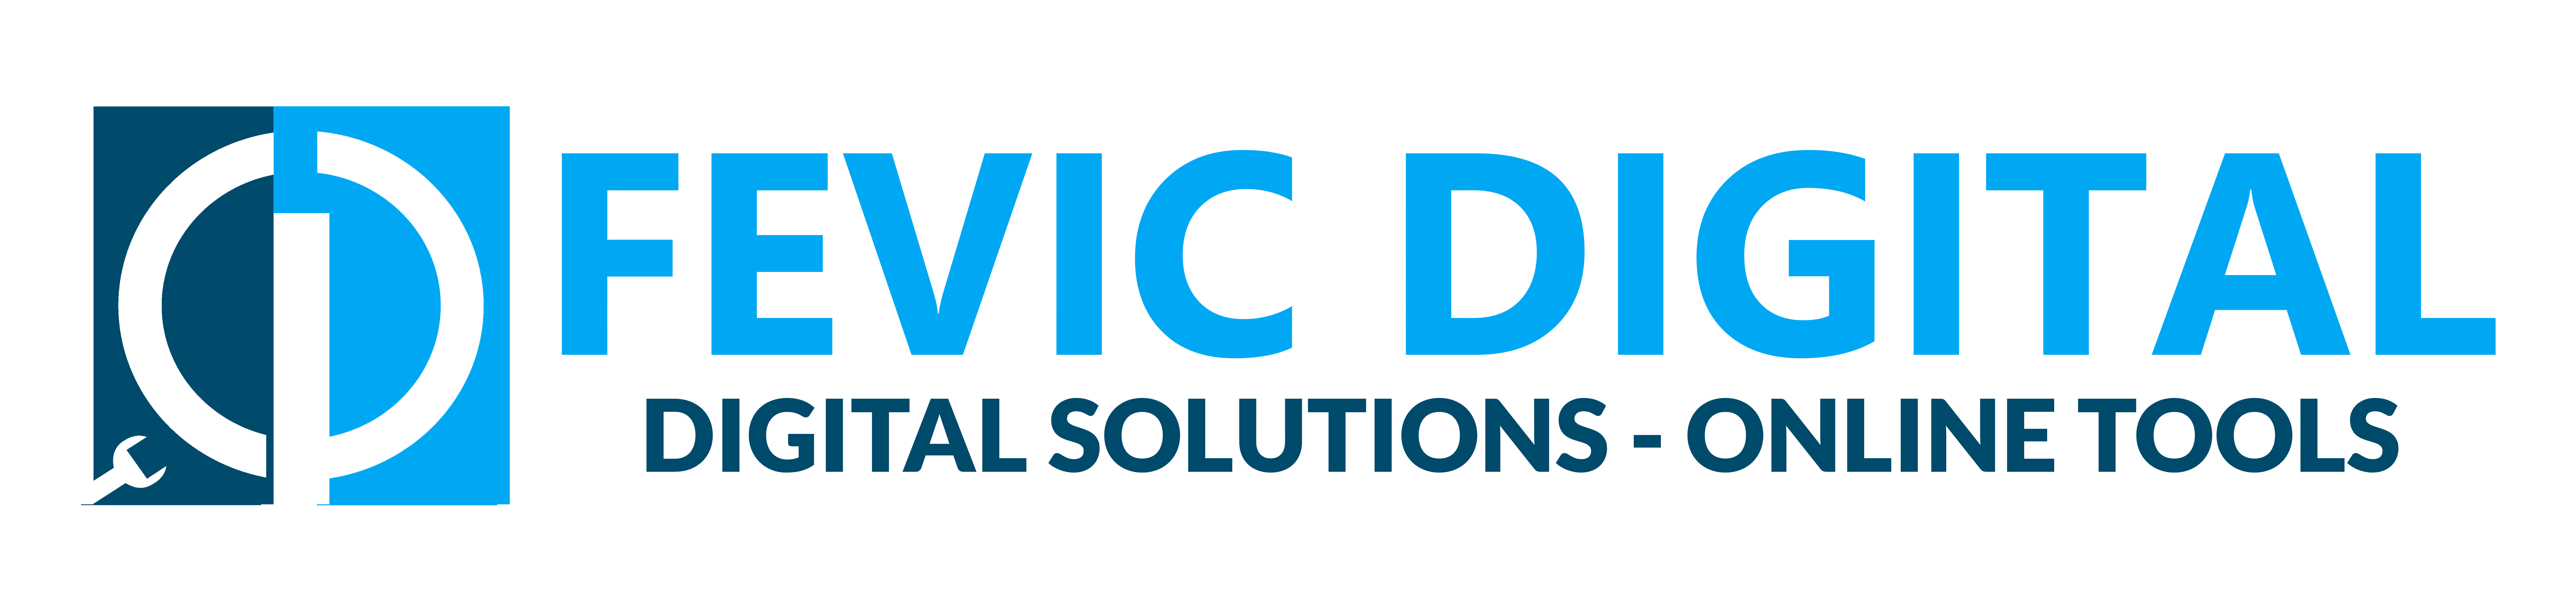 Fevic Digital logo